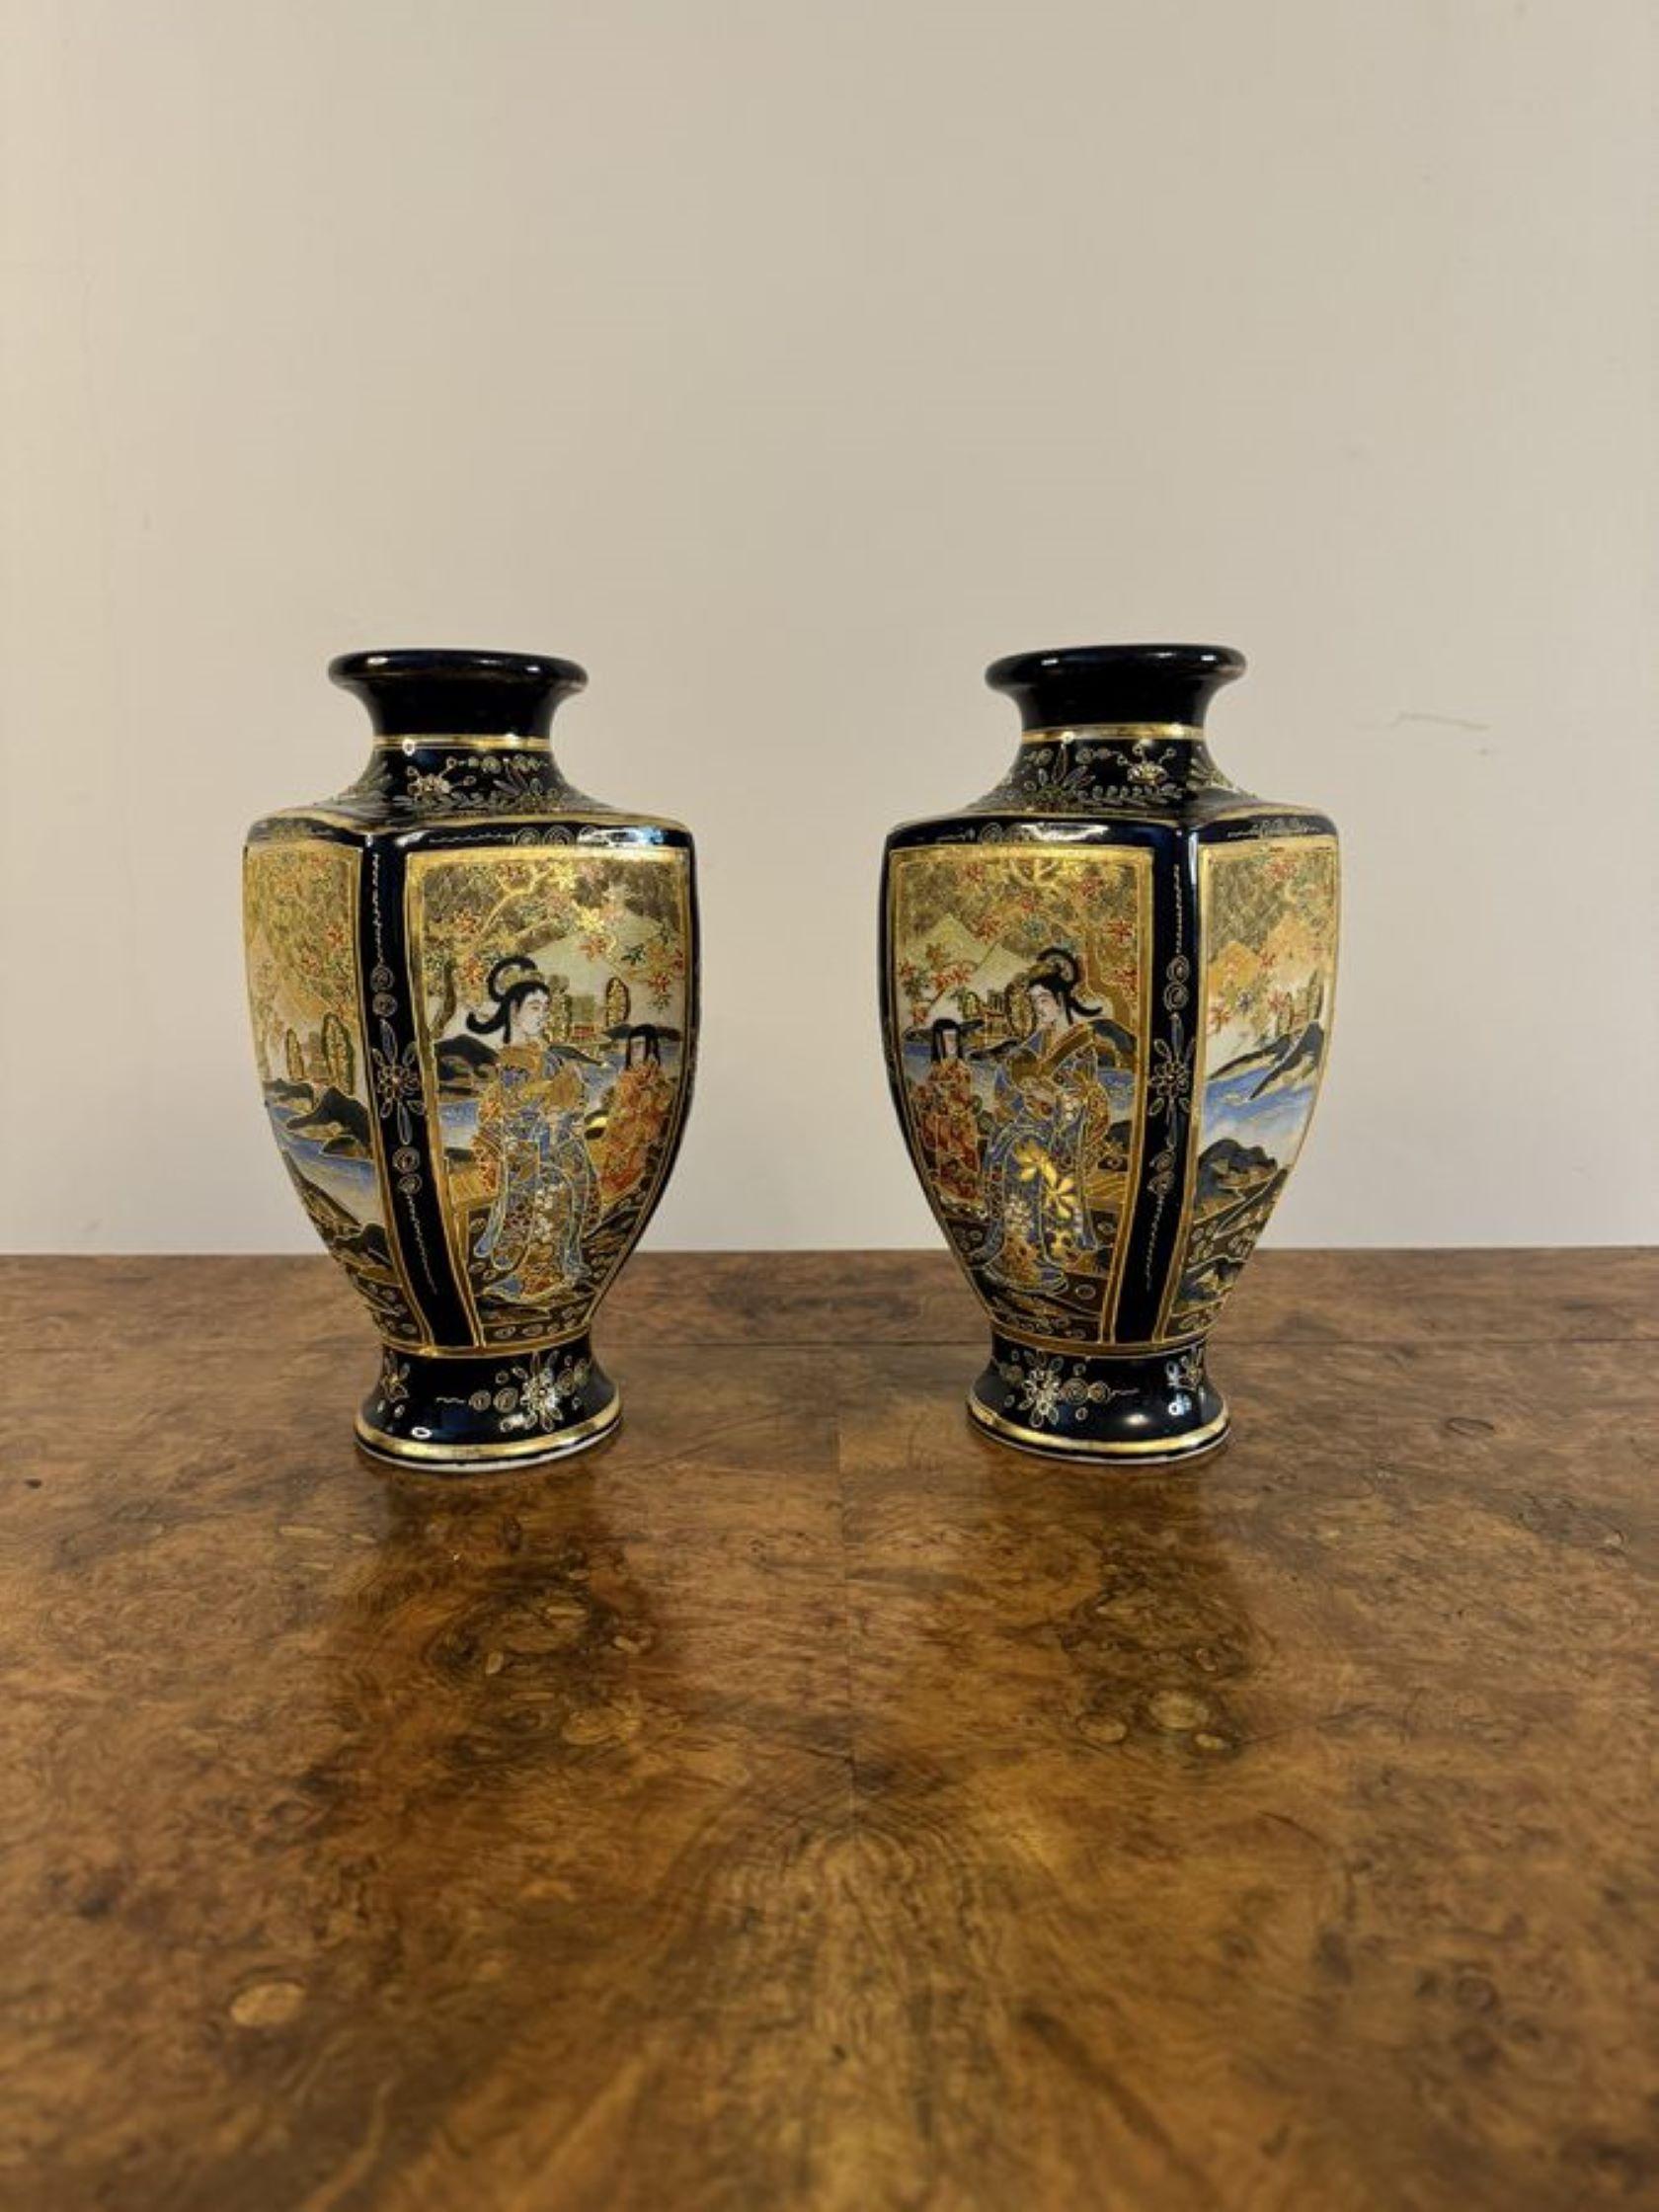 Hervorragende Qualität Paar antike japanische Satsuma Vasen mit einer Qualität Paar geformte japanische Satsuma Vasen mit vergoldeten kreisförmigen Oberseiten, mit fantastischen detaillierten handgemalten Dekoration von figuralen und